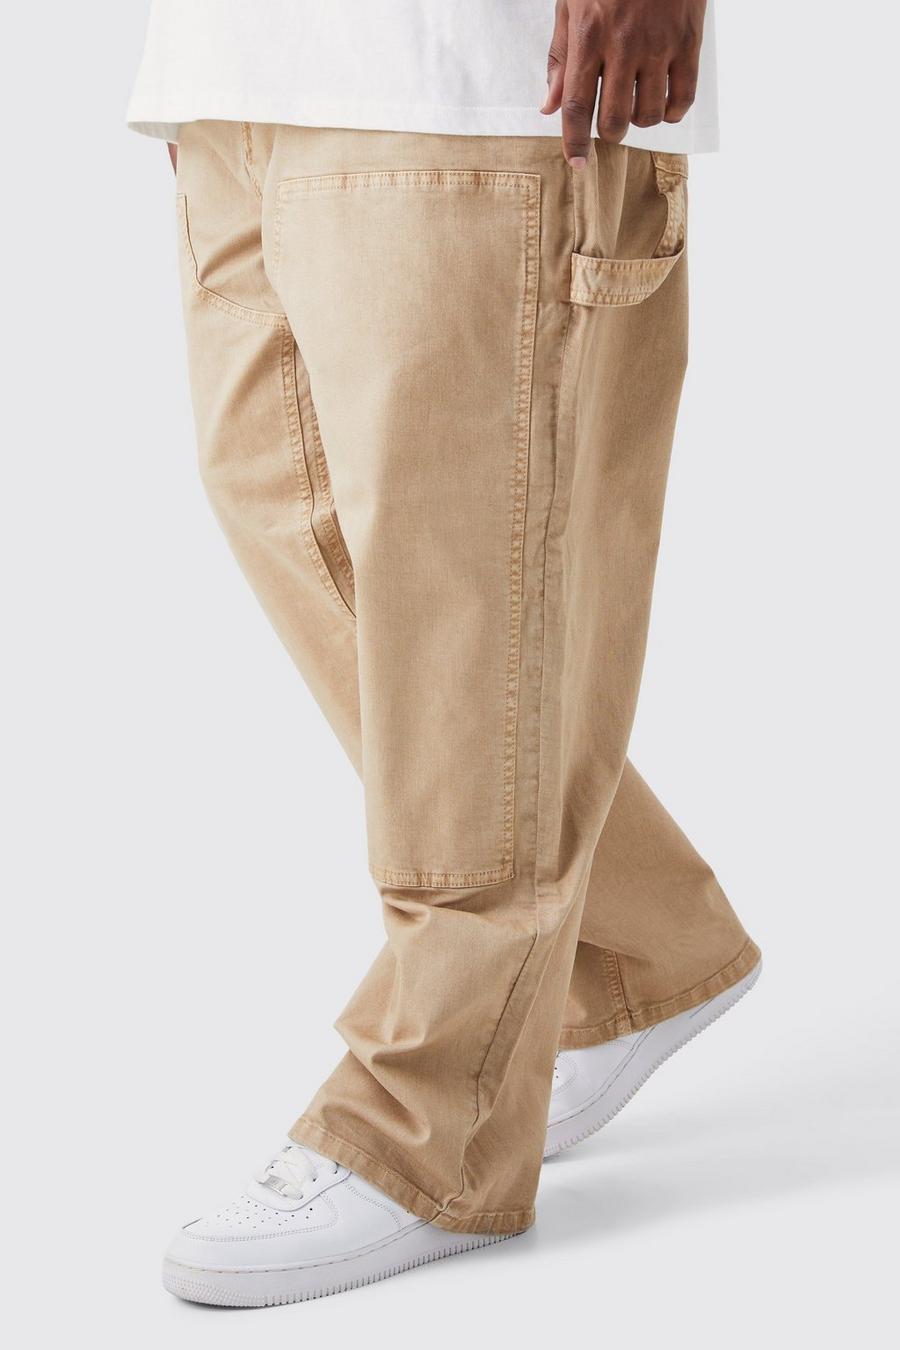 Carhartt pants mens brown - Gem